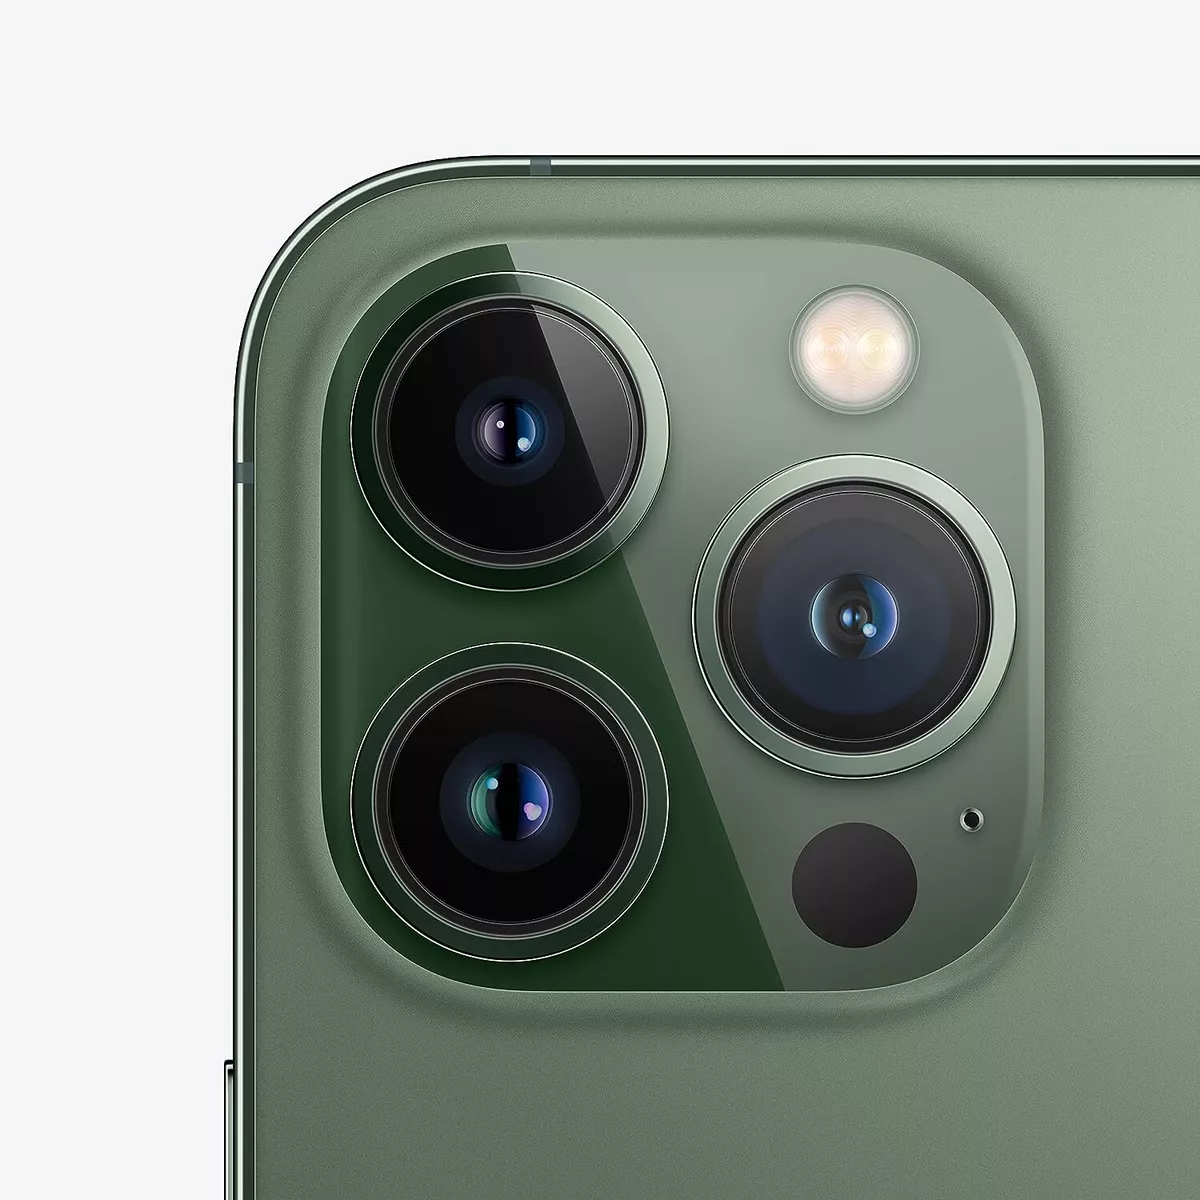 iPhone 13 Pro 128GB - Alpine Green - Unlocked